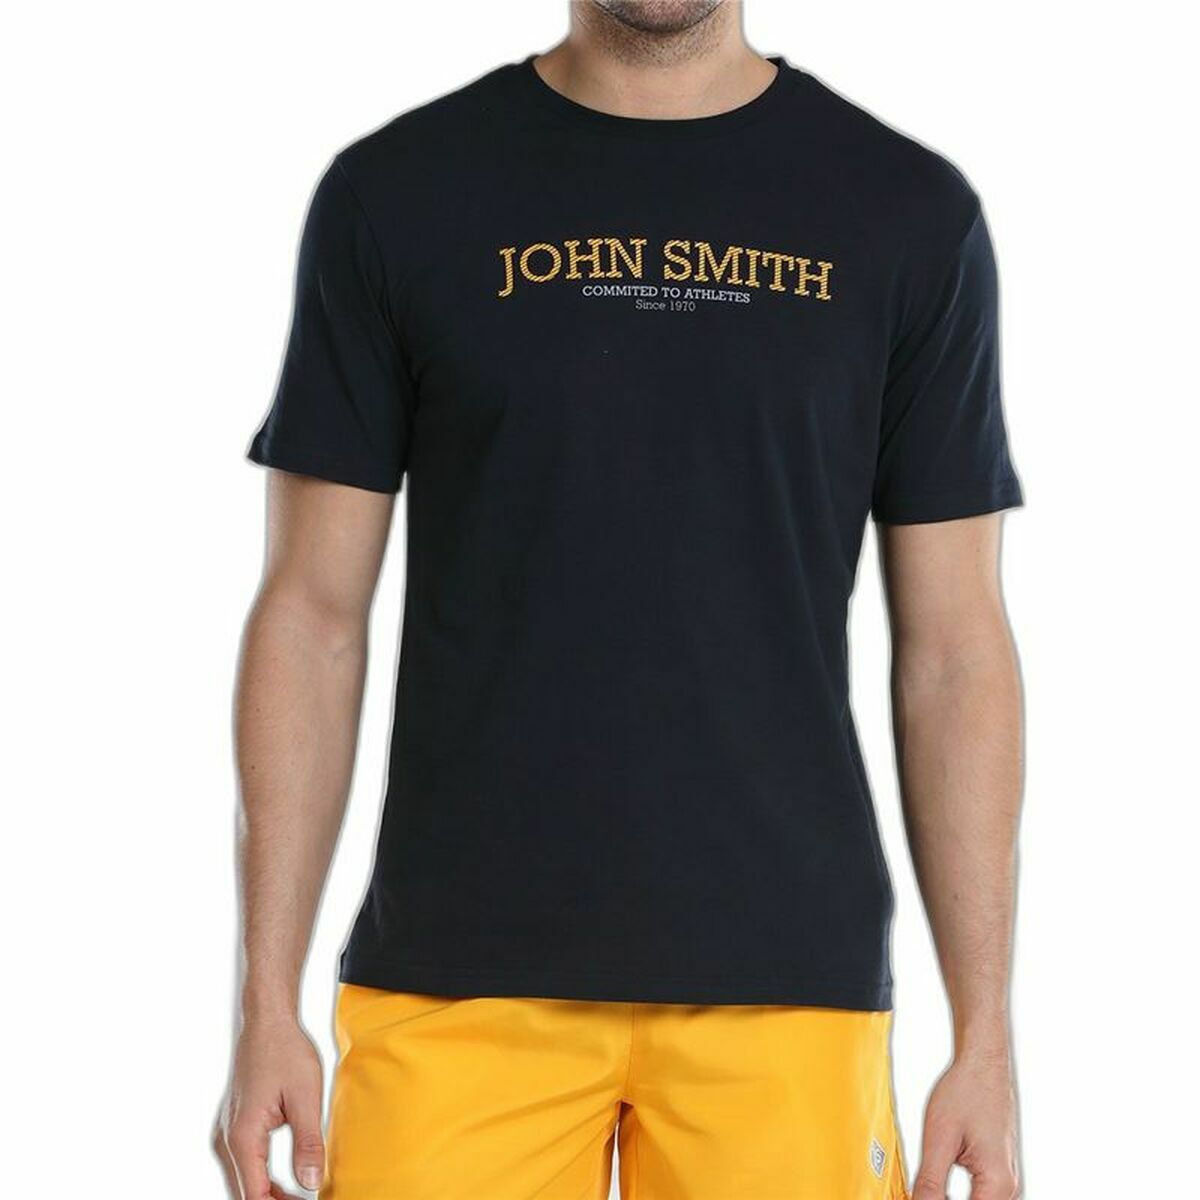 Osta tuote Miesten T-paita John Smith Efebo Laivastonsininen (Koko: M) verkkokaupastamme Korhone: Urheilu & Vapaa-aika 20% alennuksella koodilla VIIKONLOPPU